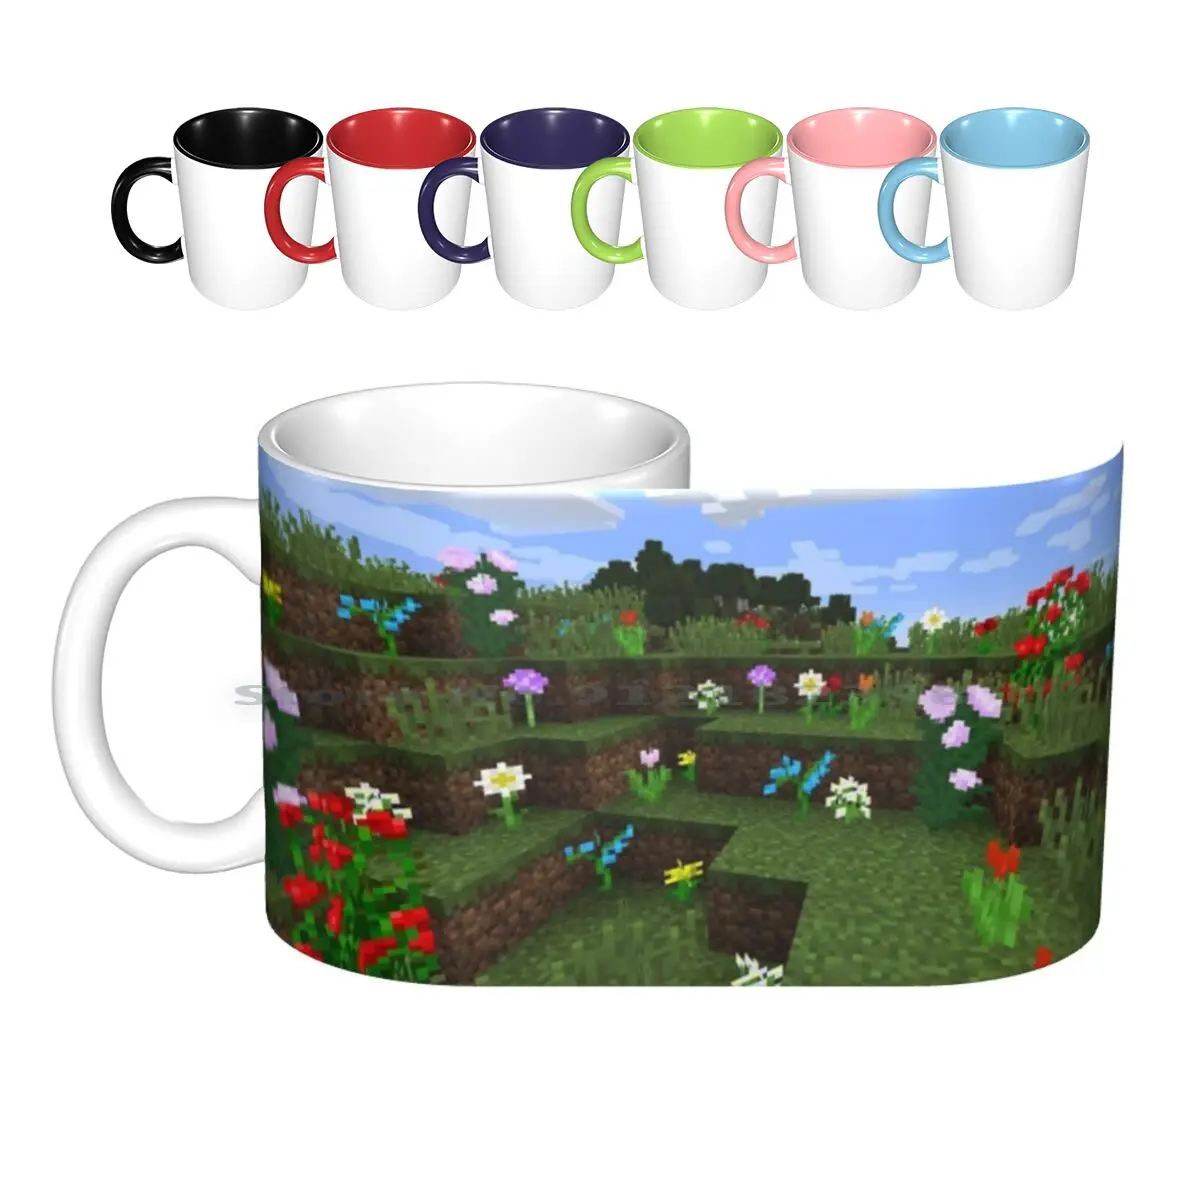 

Керамические кружки с изображением цветов и сада, кофейные чашки, кружка для молока и чая, Facemask, маски для лица, видеоигра, видеоигры, игры, иг...